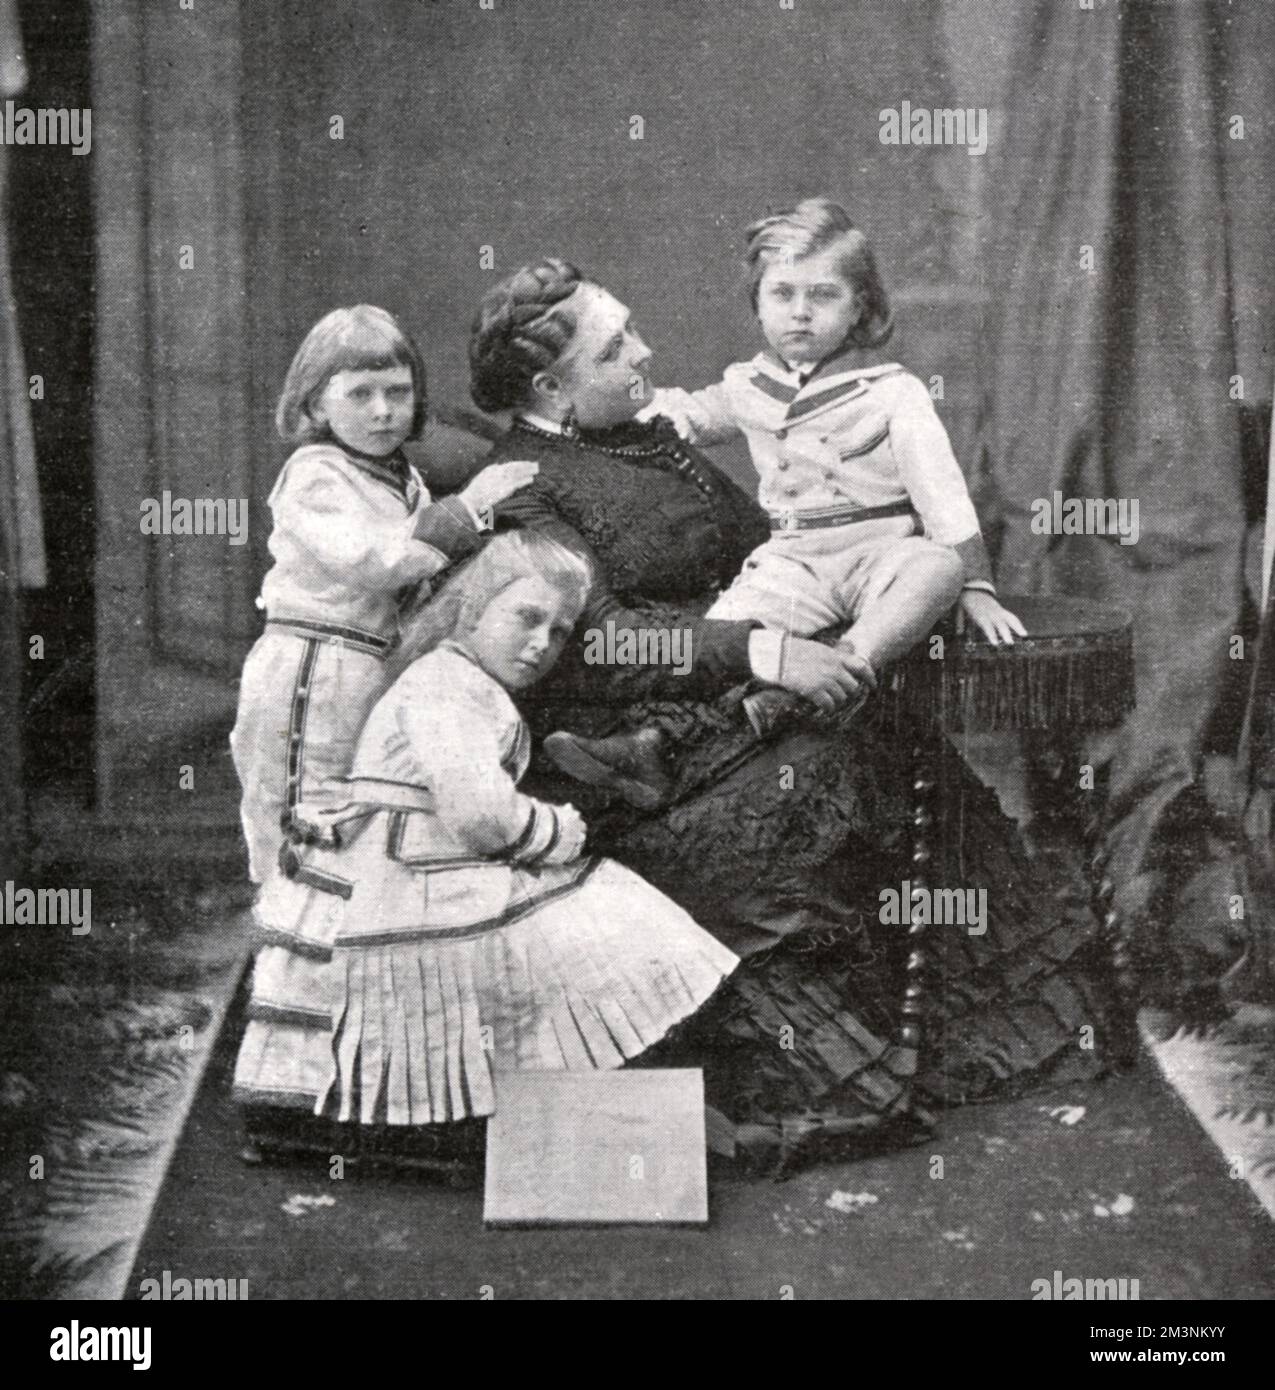 La princesse Mary Adelaide de Cambridge (duchesse de Teck) avec trois de ses enfants, dont May (en bas à gauche), qui devint la reine Mary. Date: Vers 1870s Banque D'Images